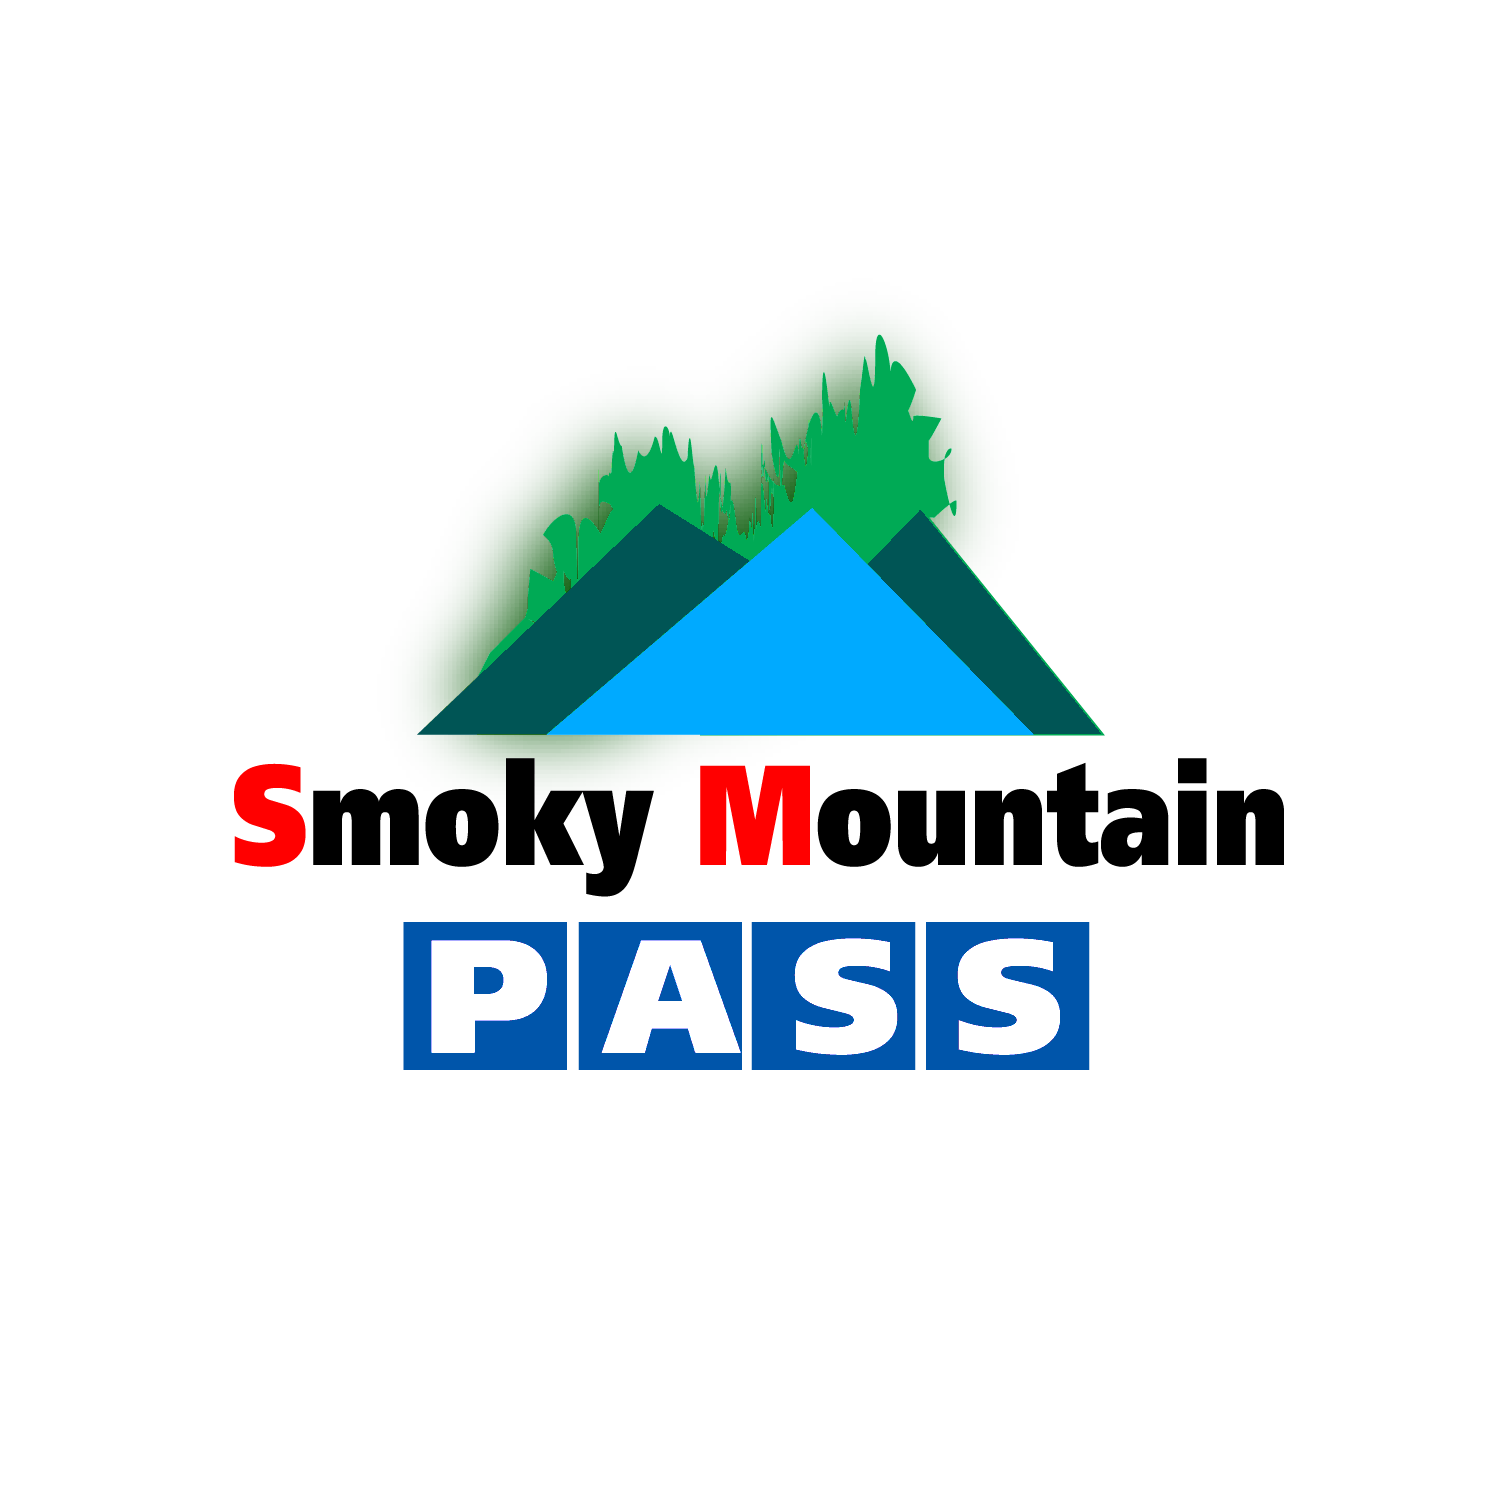 Mountain Entertainment Logo - Elegant, Playful, Entertainment Logo Design for Smoky Mountain Pass ...